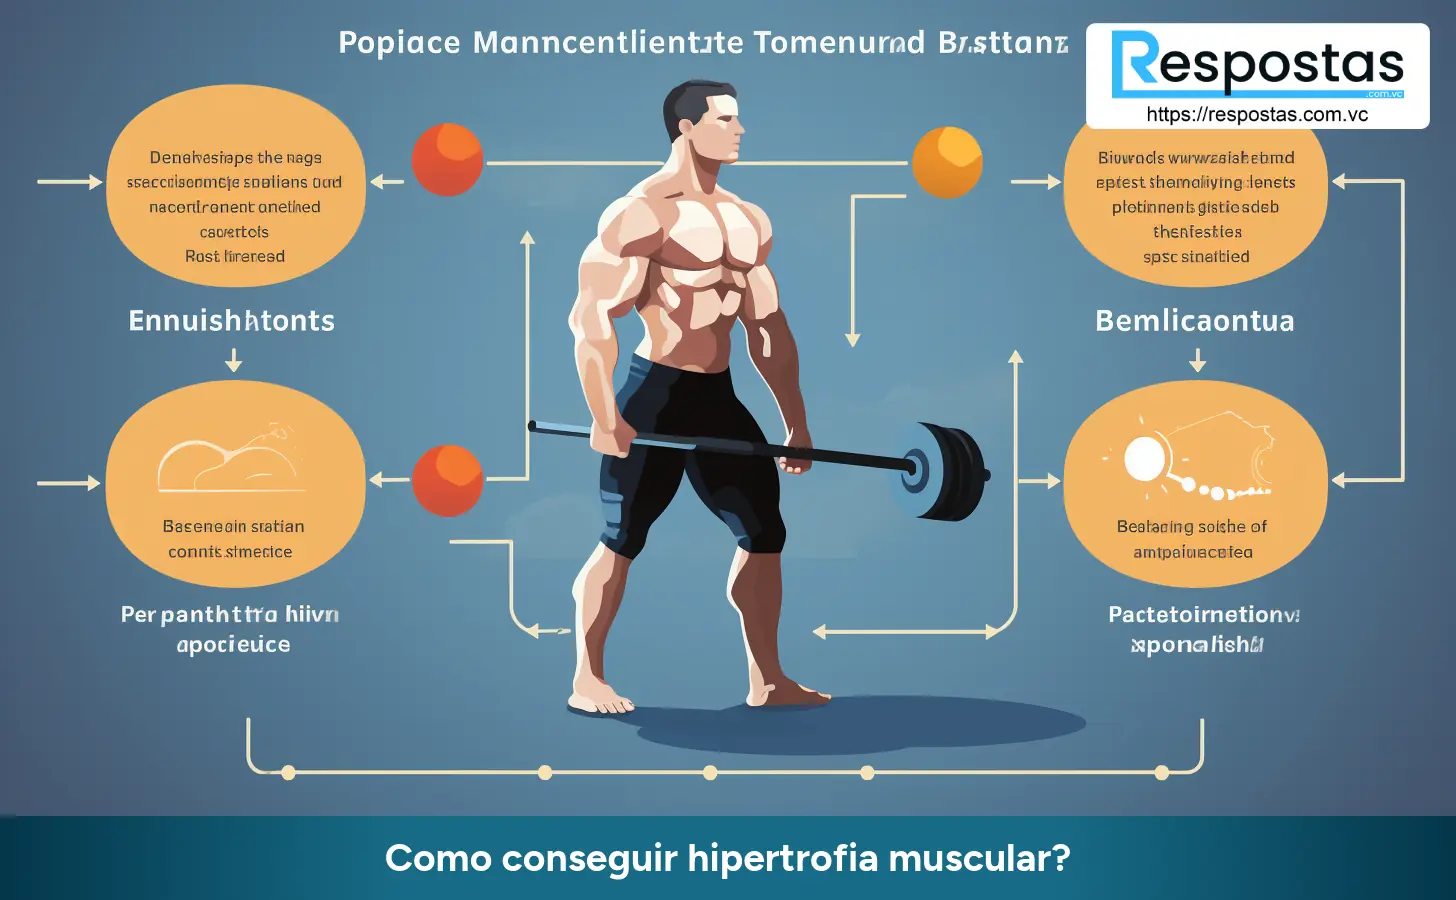 Como conseguir hipertrofia muscular?